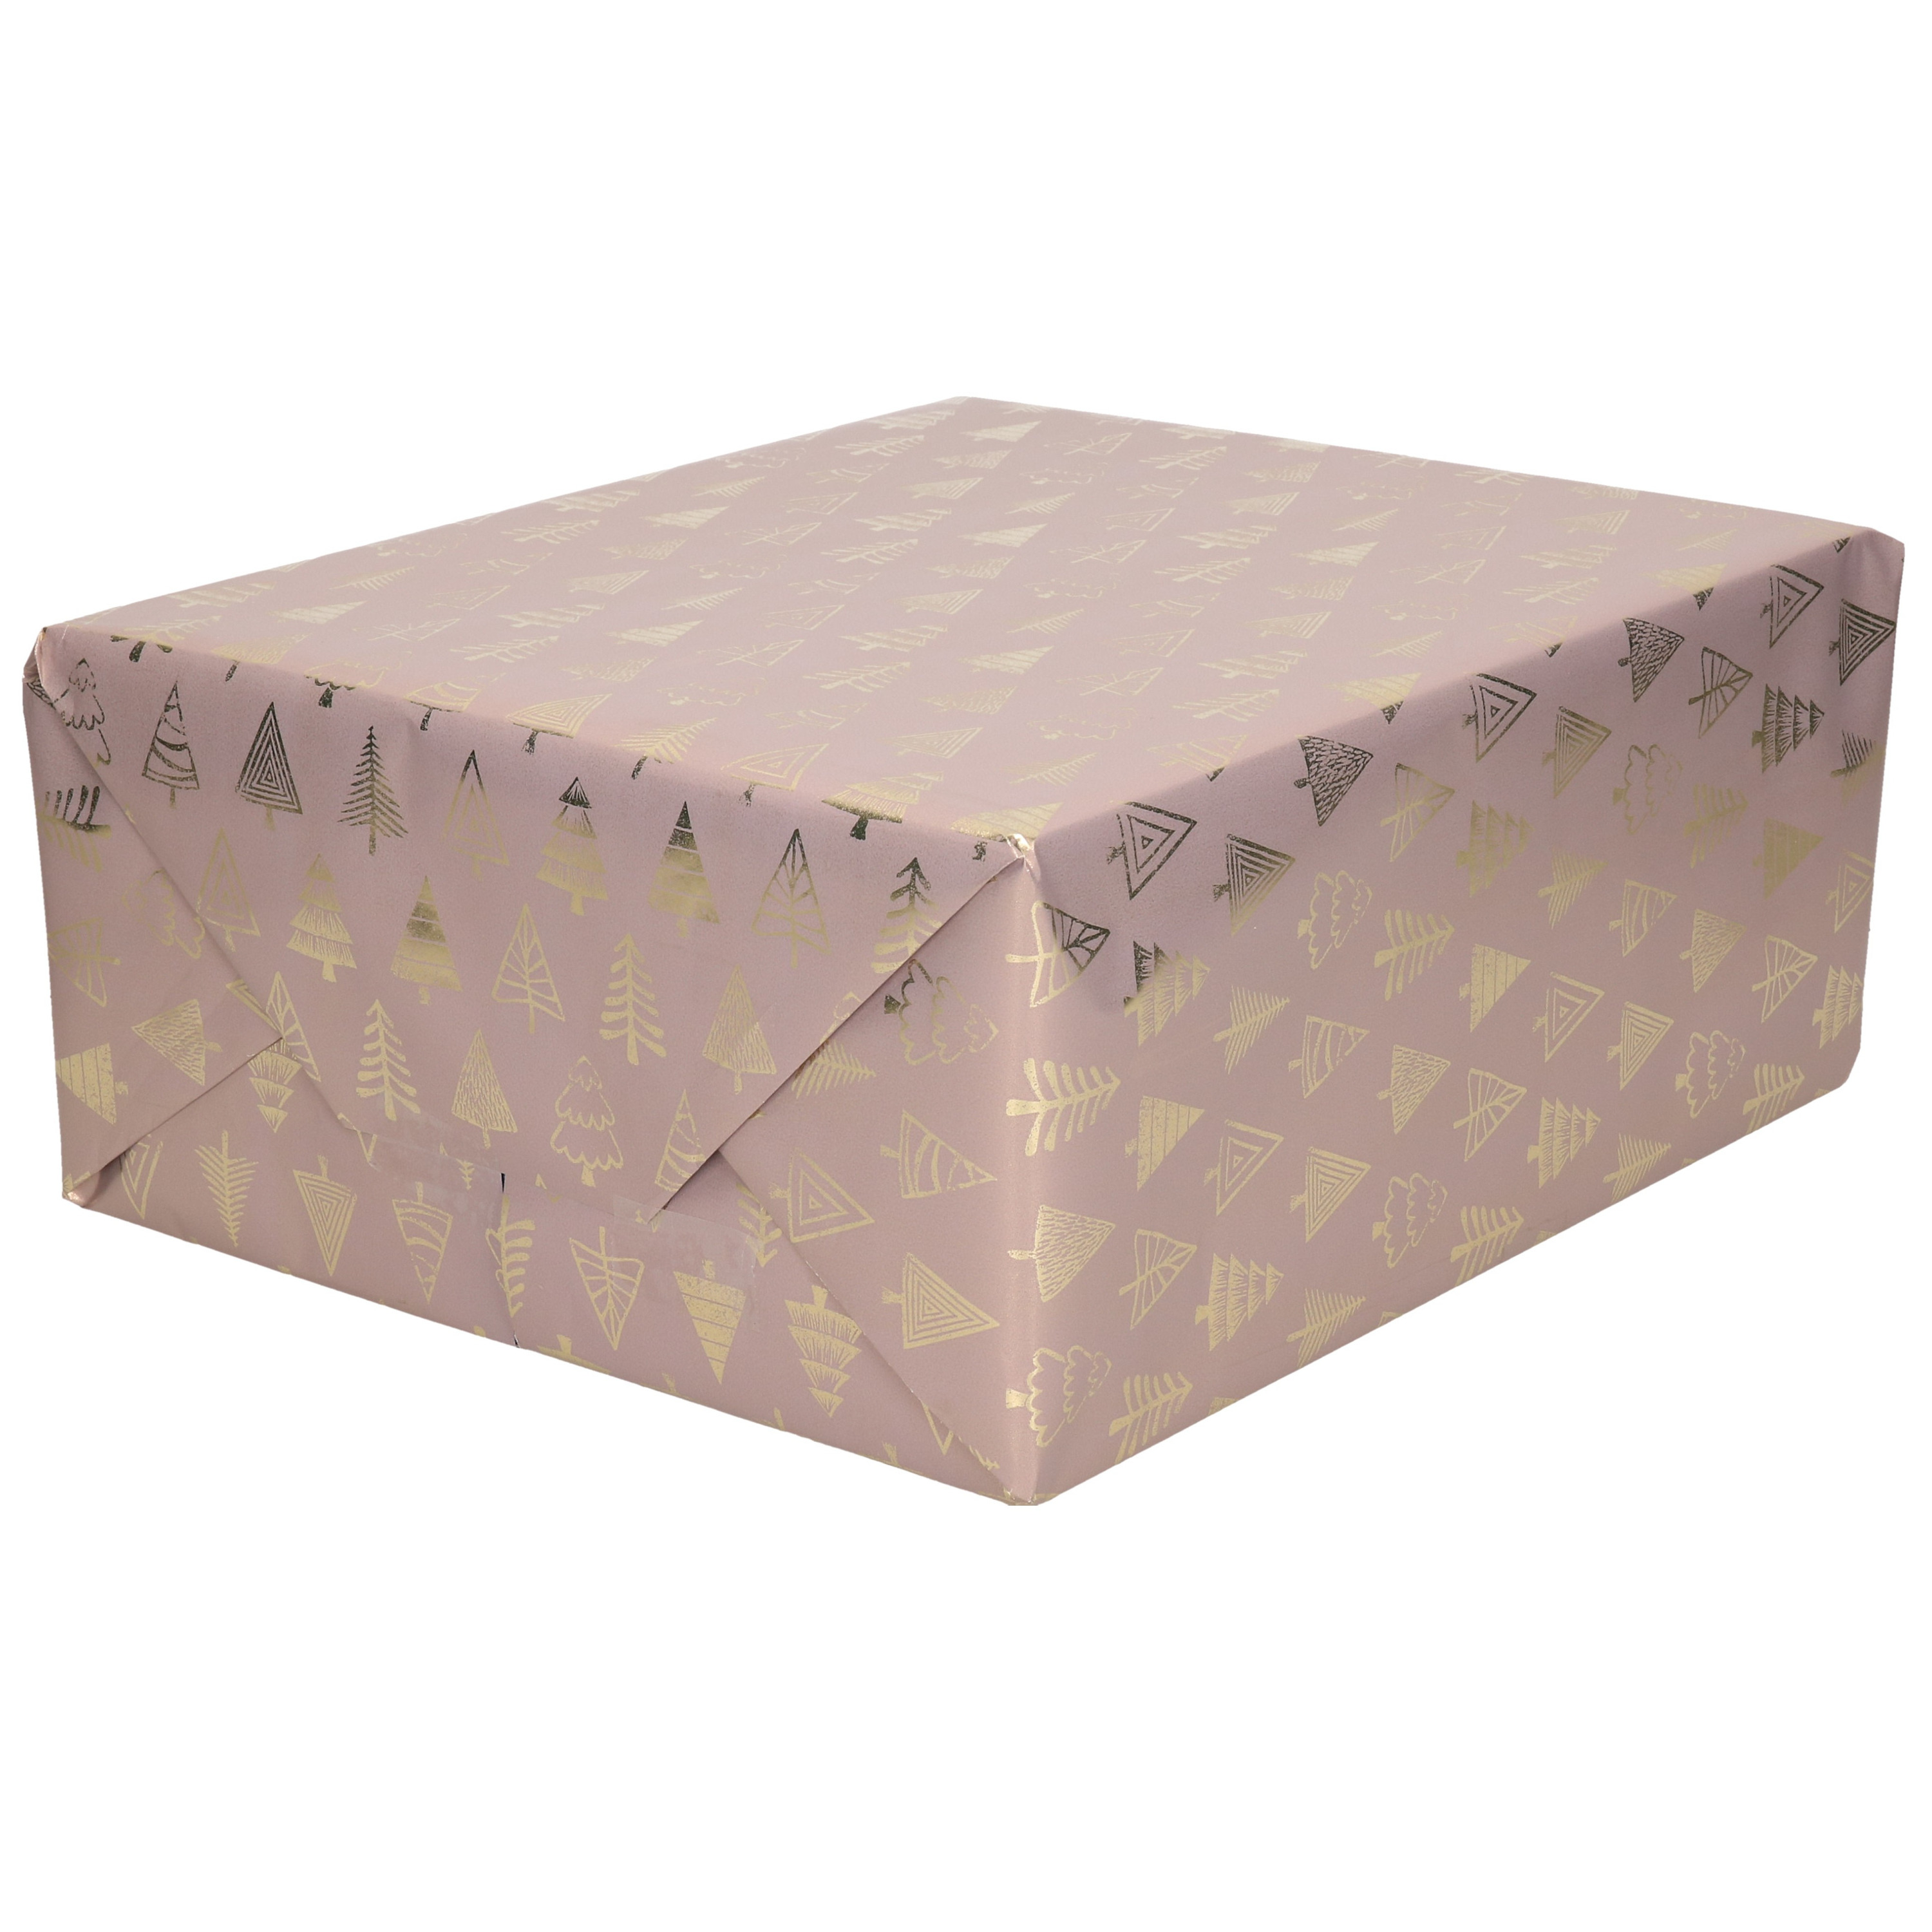 1x Rollen inpakpapier/cadeaupapier Kerst print roze/gouden kerstbomen 250 x 70 cm luxe kwaliteit